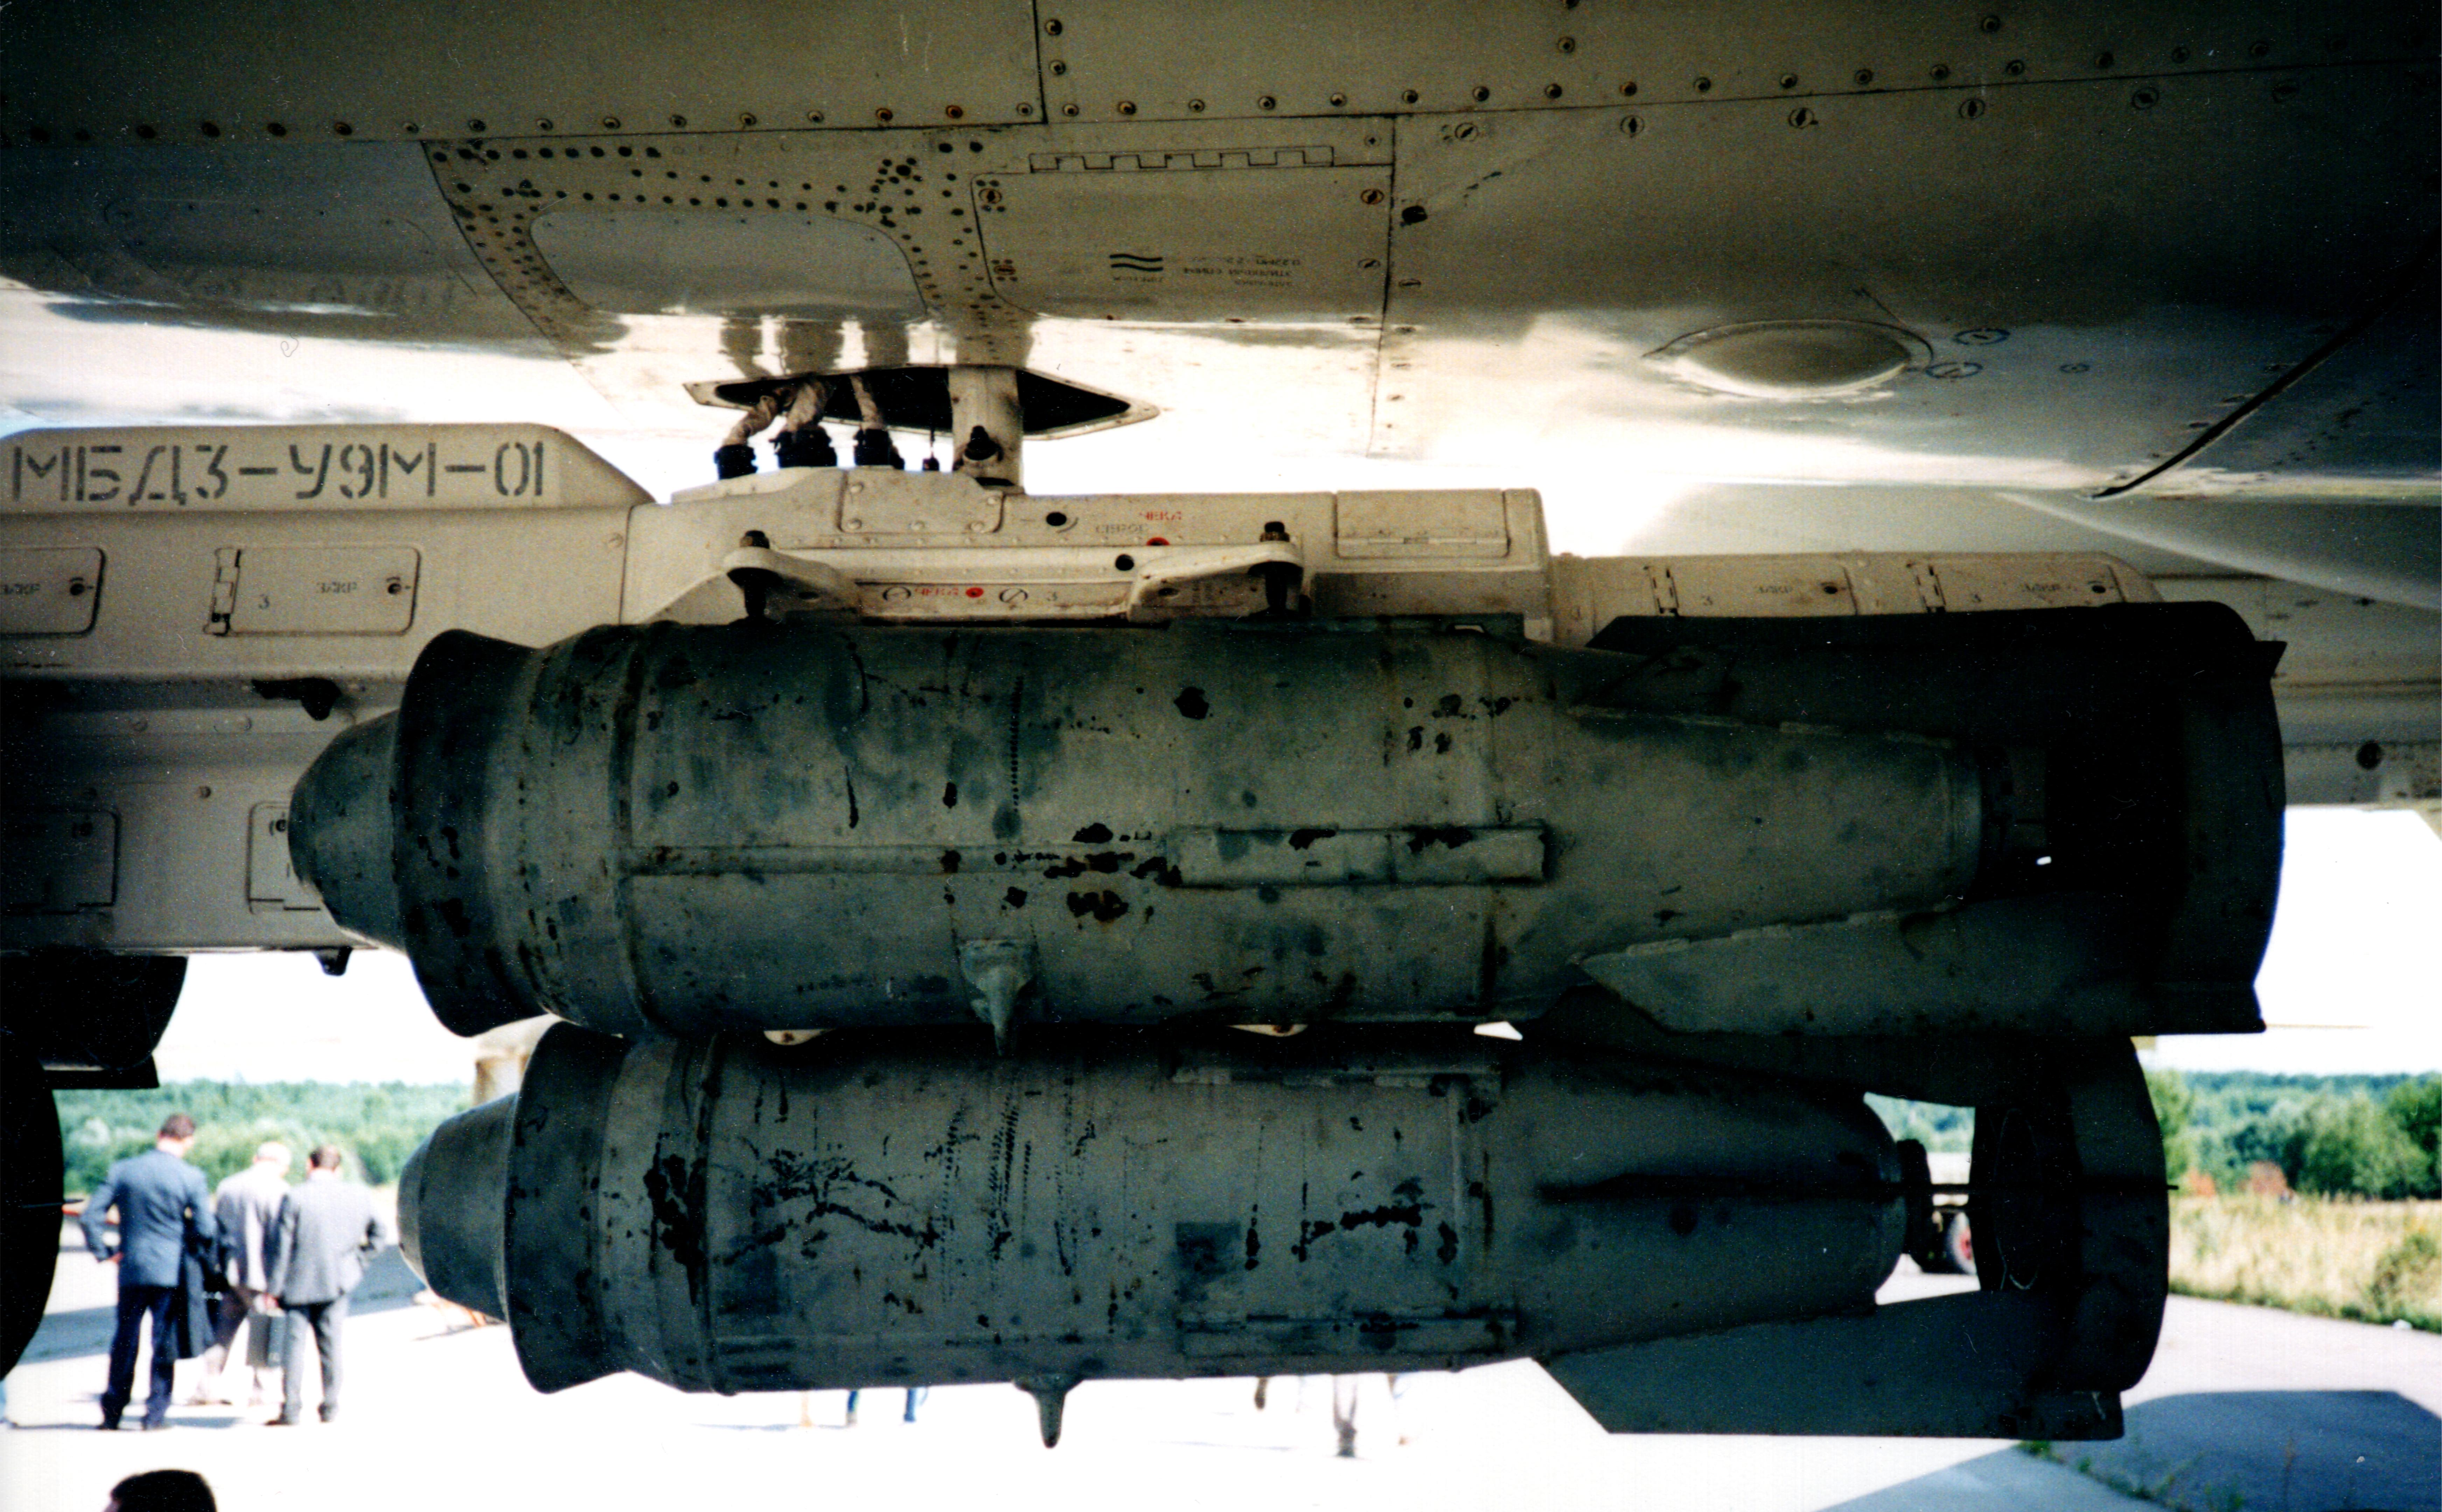 На четырех держателях МБД3-У9-68 можно подвесить по 9 бомб ФАБ-250М54, а всего Ту-22М3 берет их 69 штук